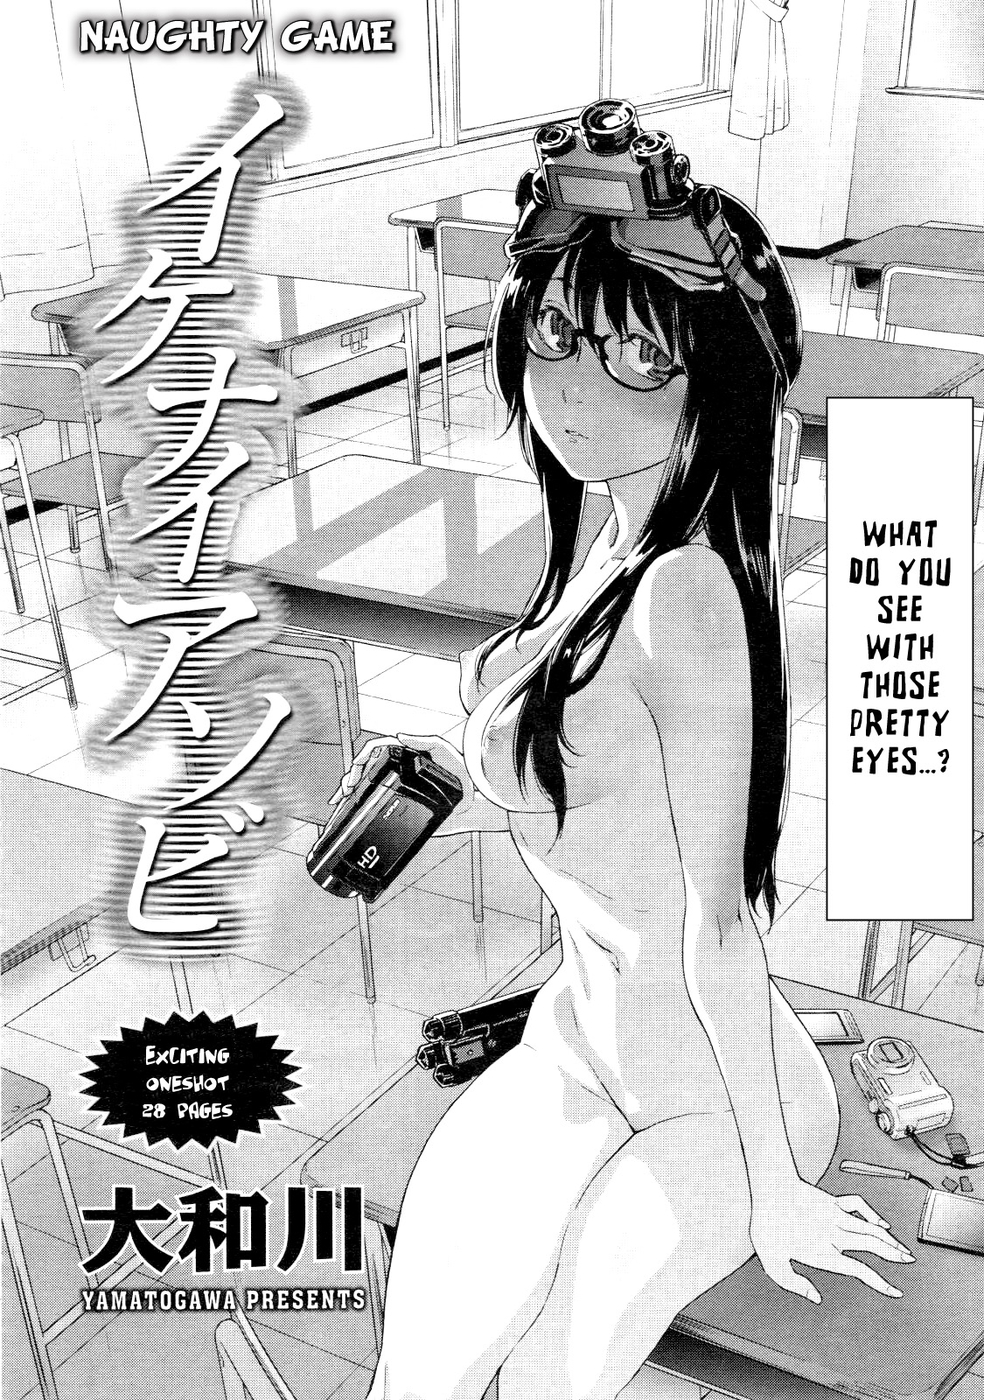 Hentai Manga Comic-Naughty Game-Read-2